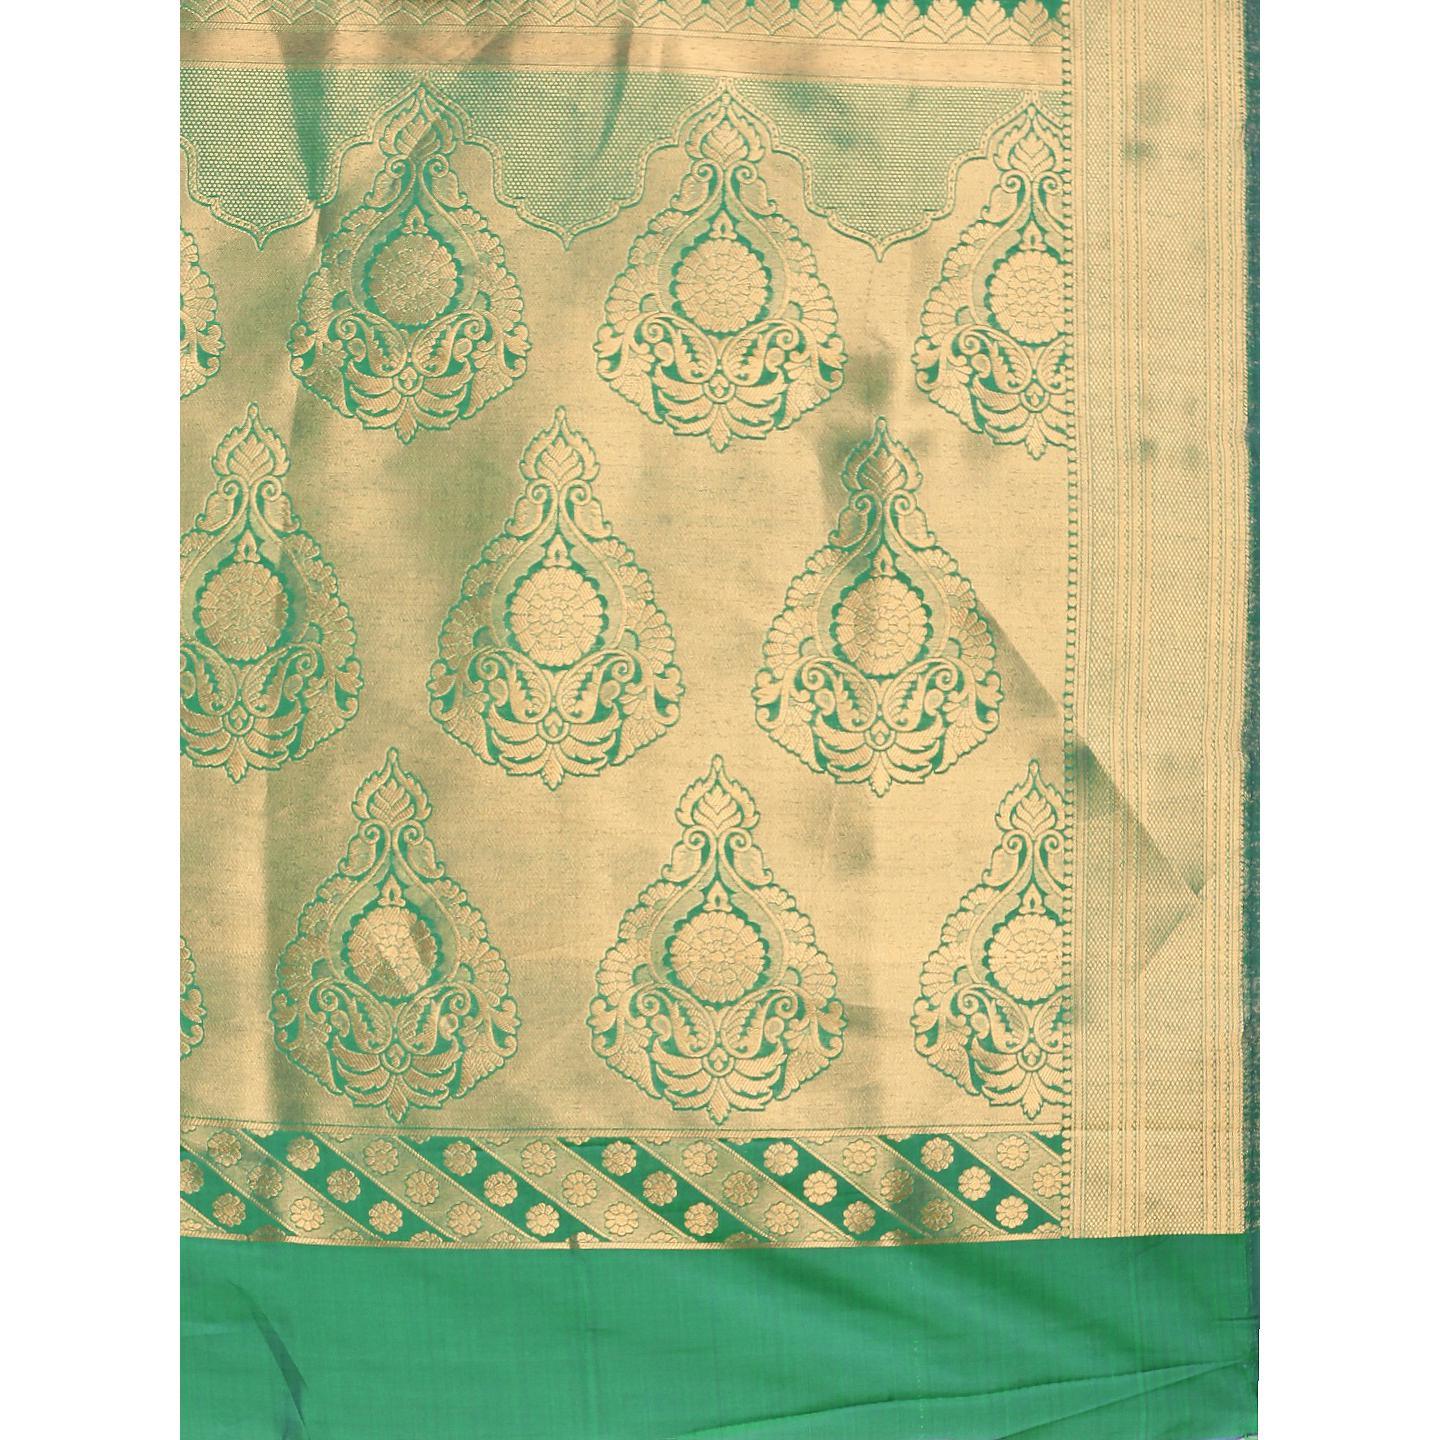 Green Festive Wear Woven Kanjivaram Silk Saree - Peachmode